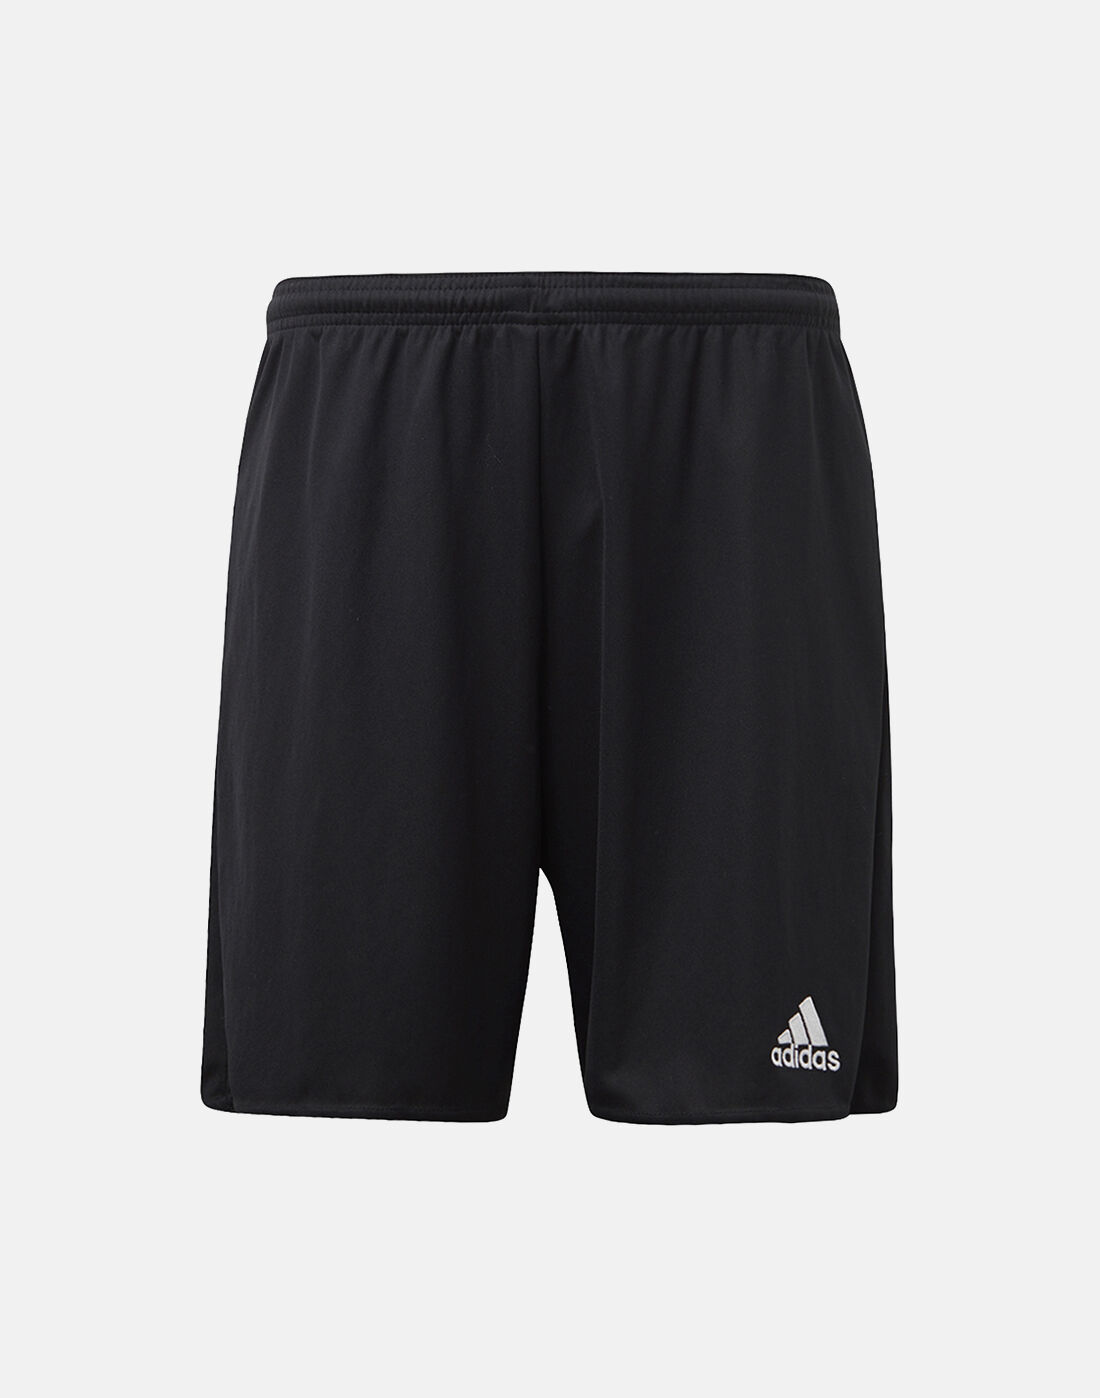 black adidas football shorts